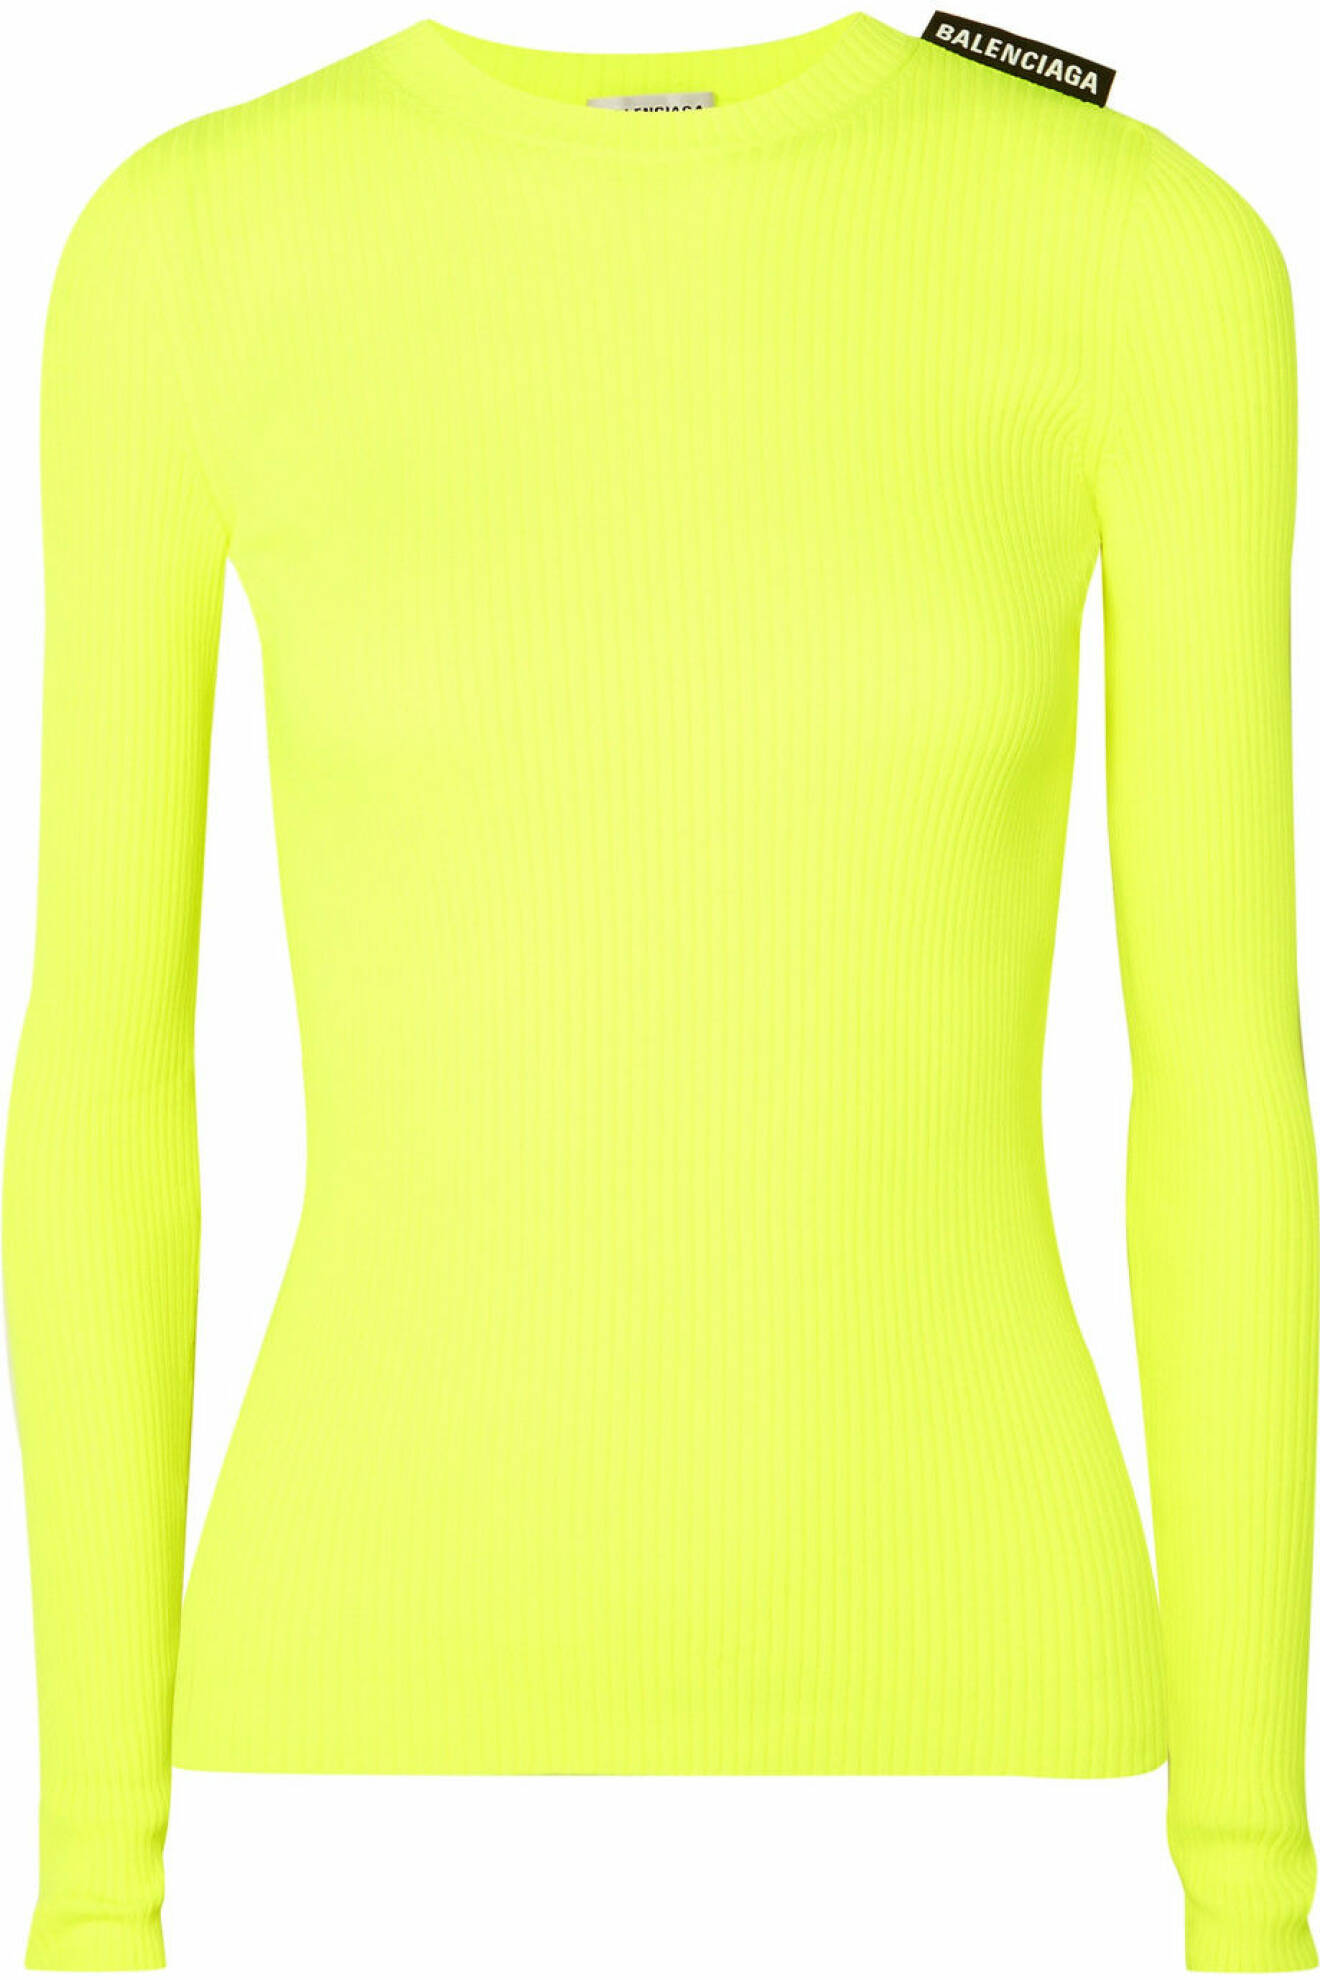 (Själv)lysande tröja i neongul från Balenciaga.